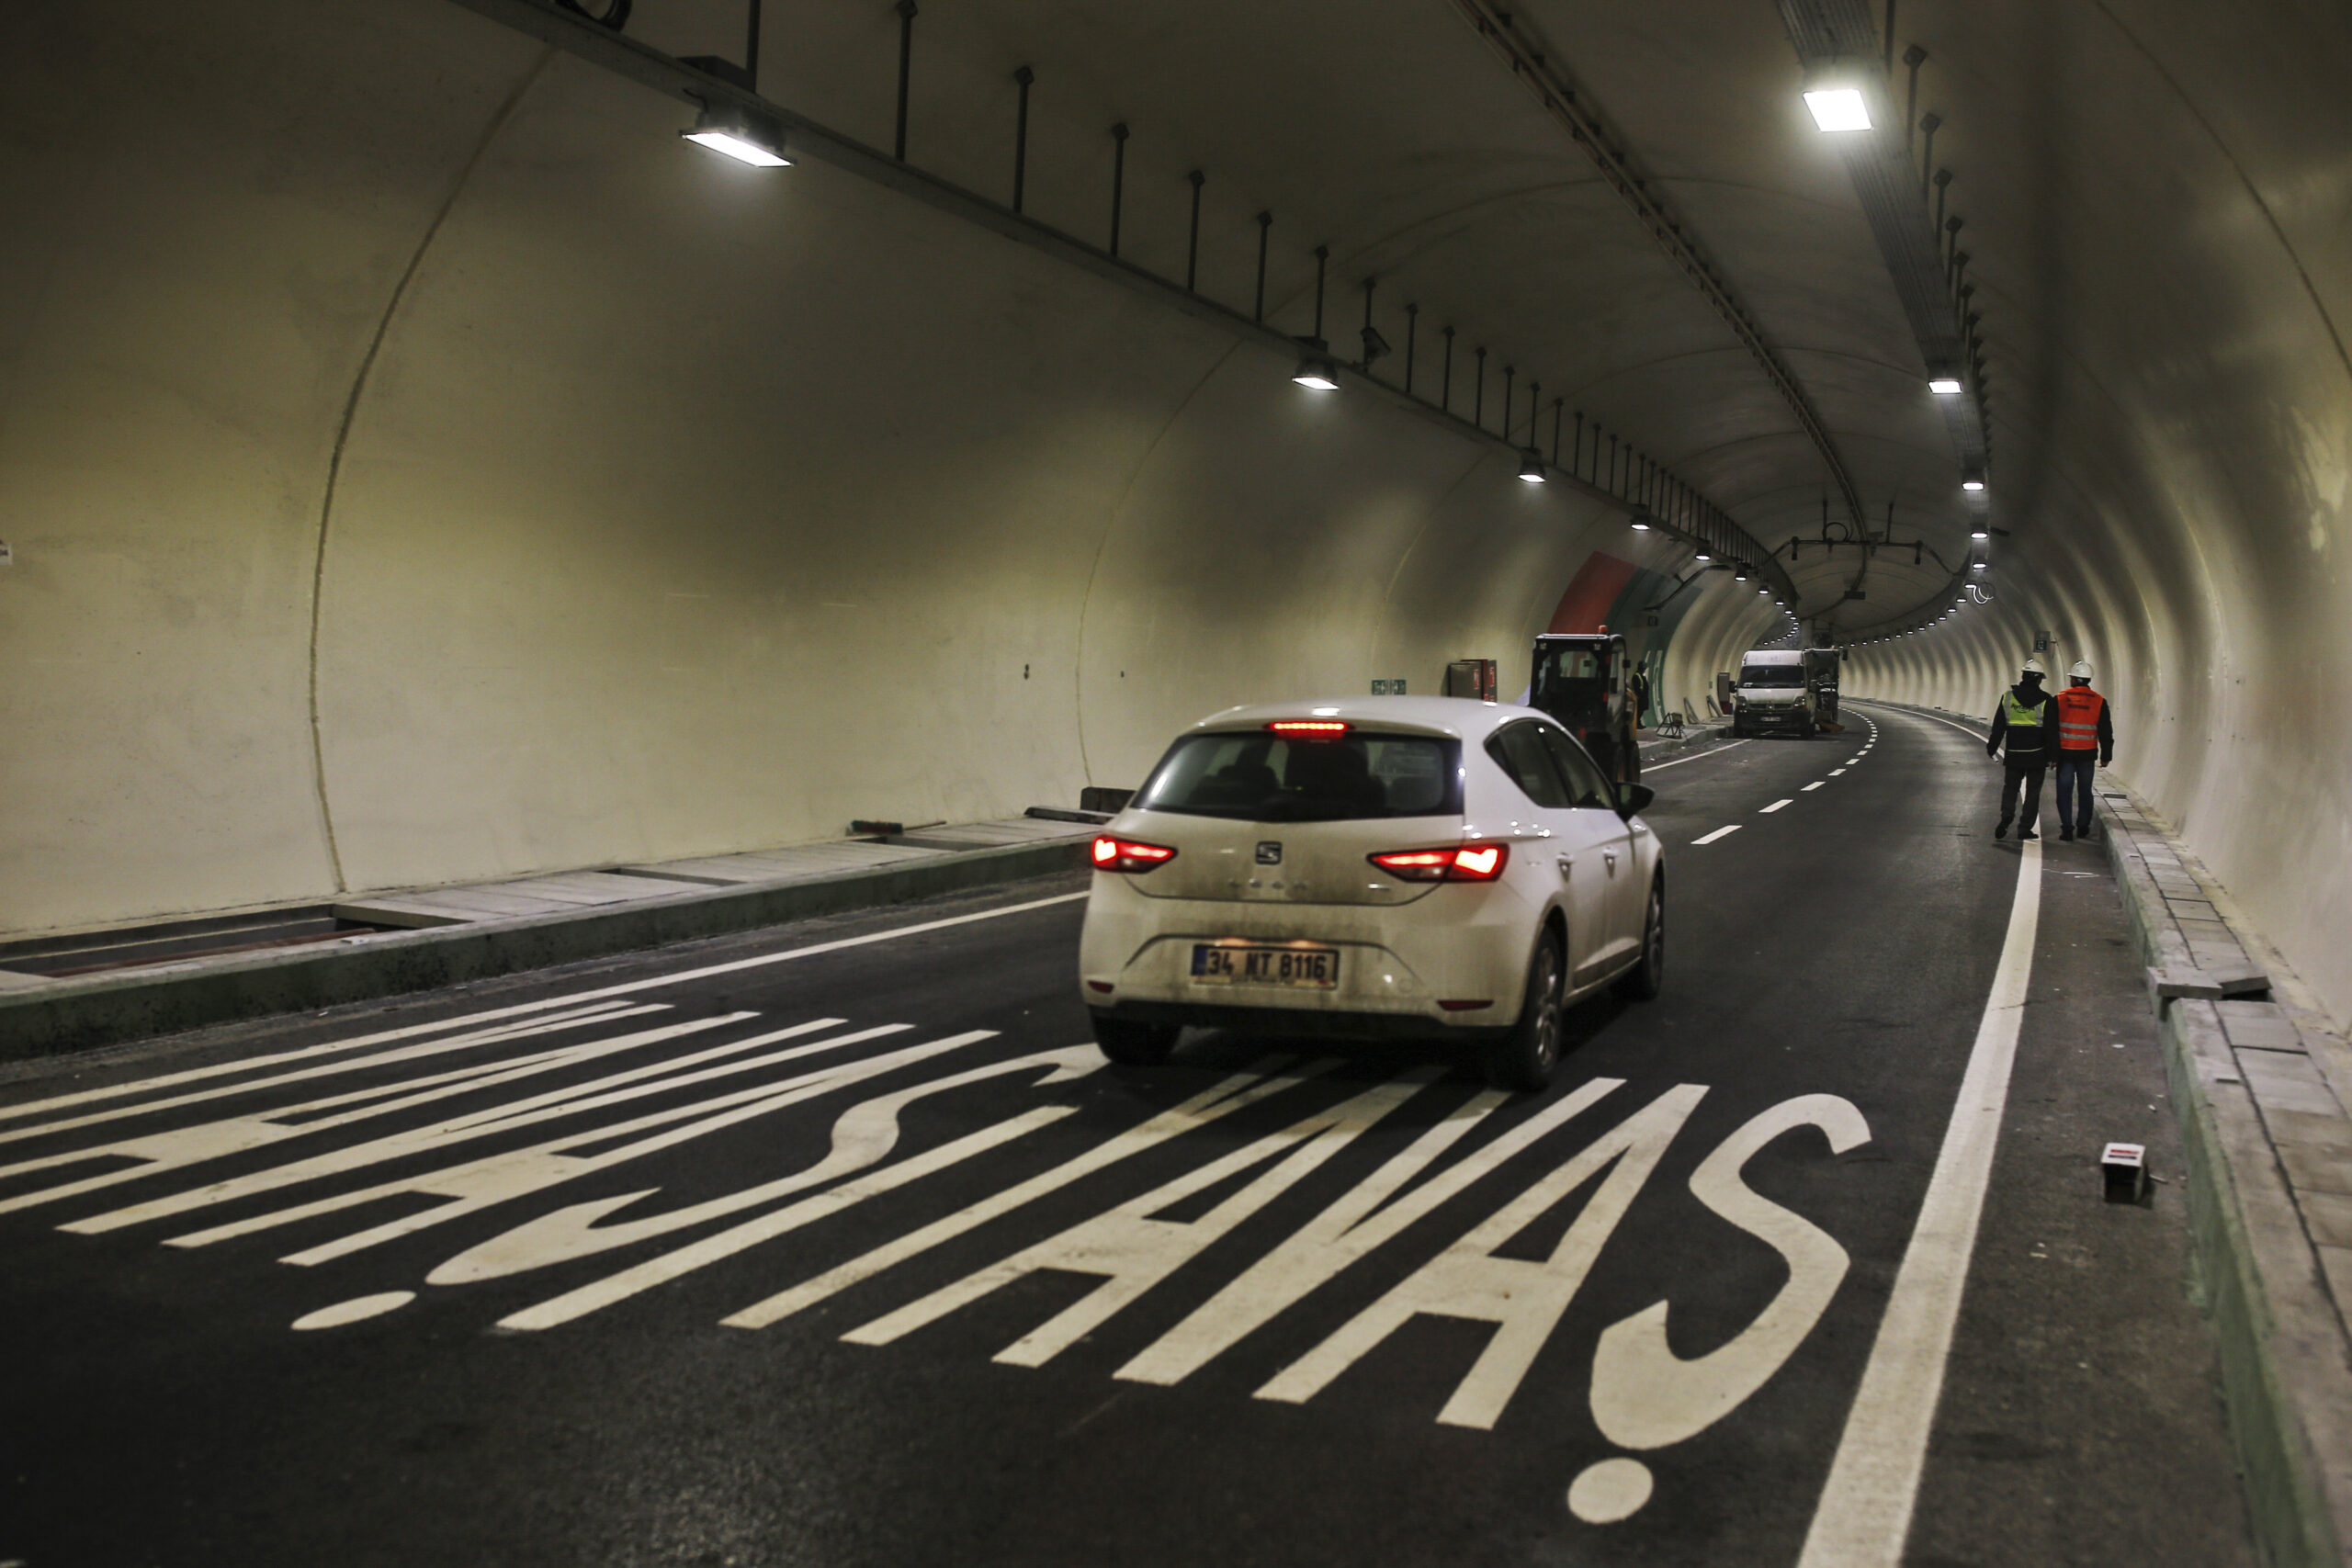 Táxis com pedágio 50% mais alto para rodovias e pontes na Turquia a partir de hoje